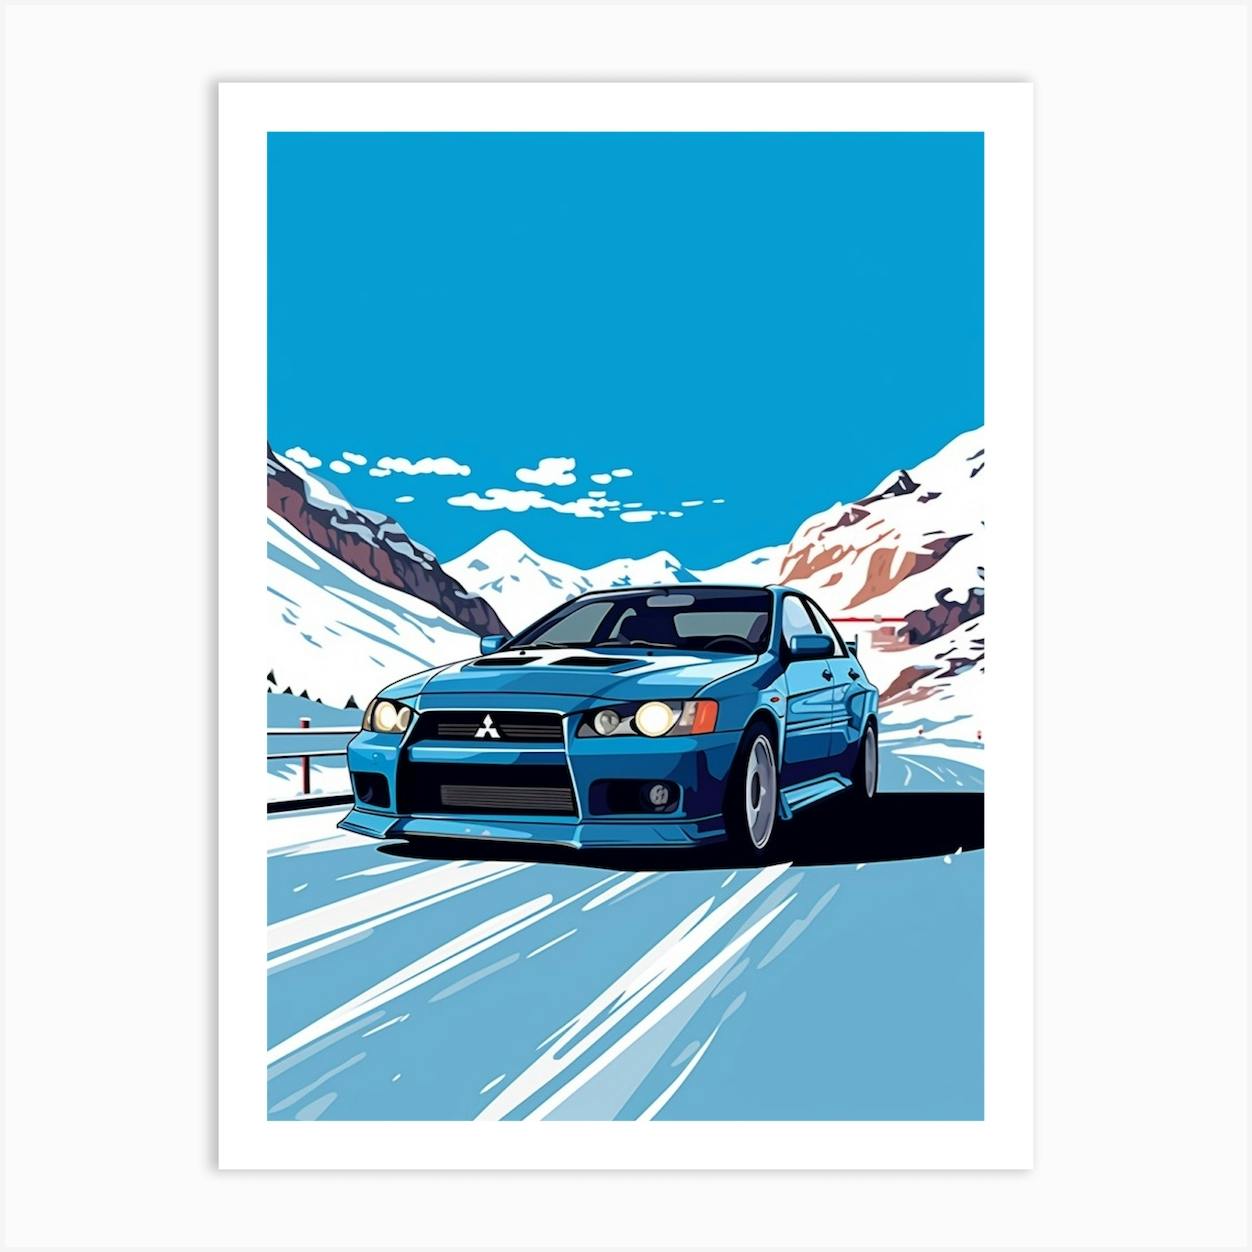 A Mitsubishi Lancer Evolution In The Route Des Grandes Alpes Illustration 4  Art Print